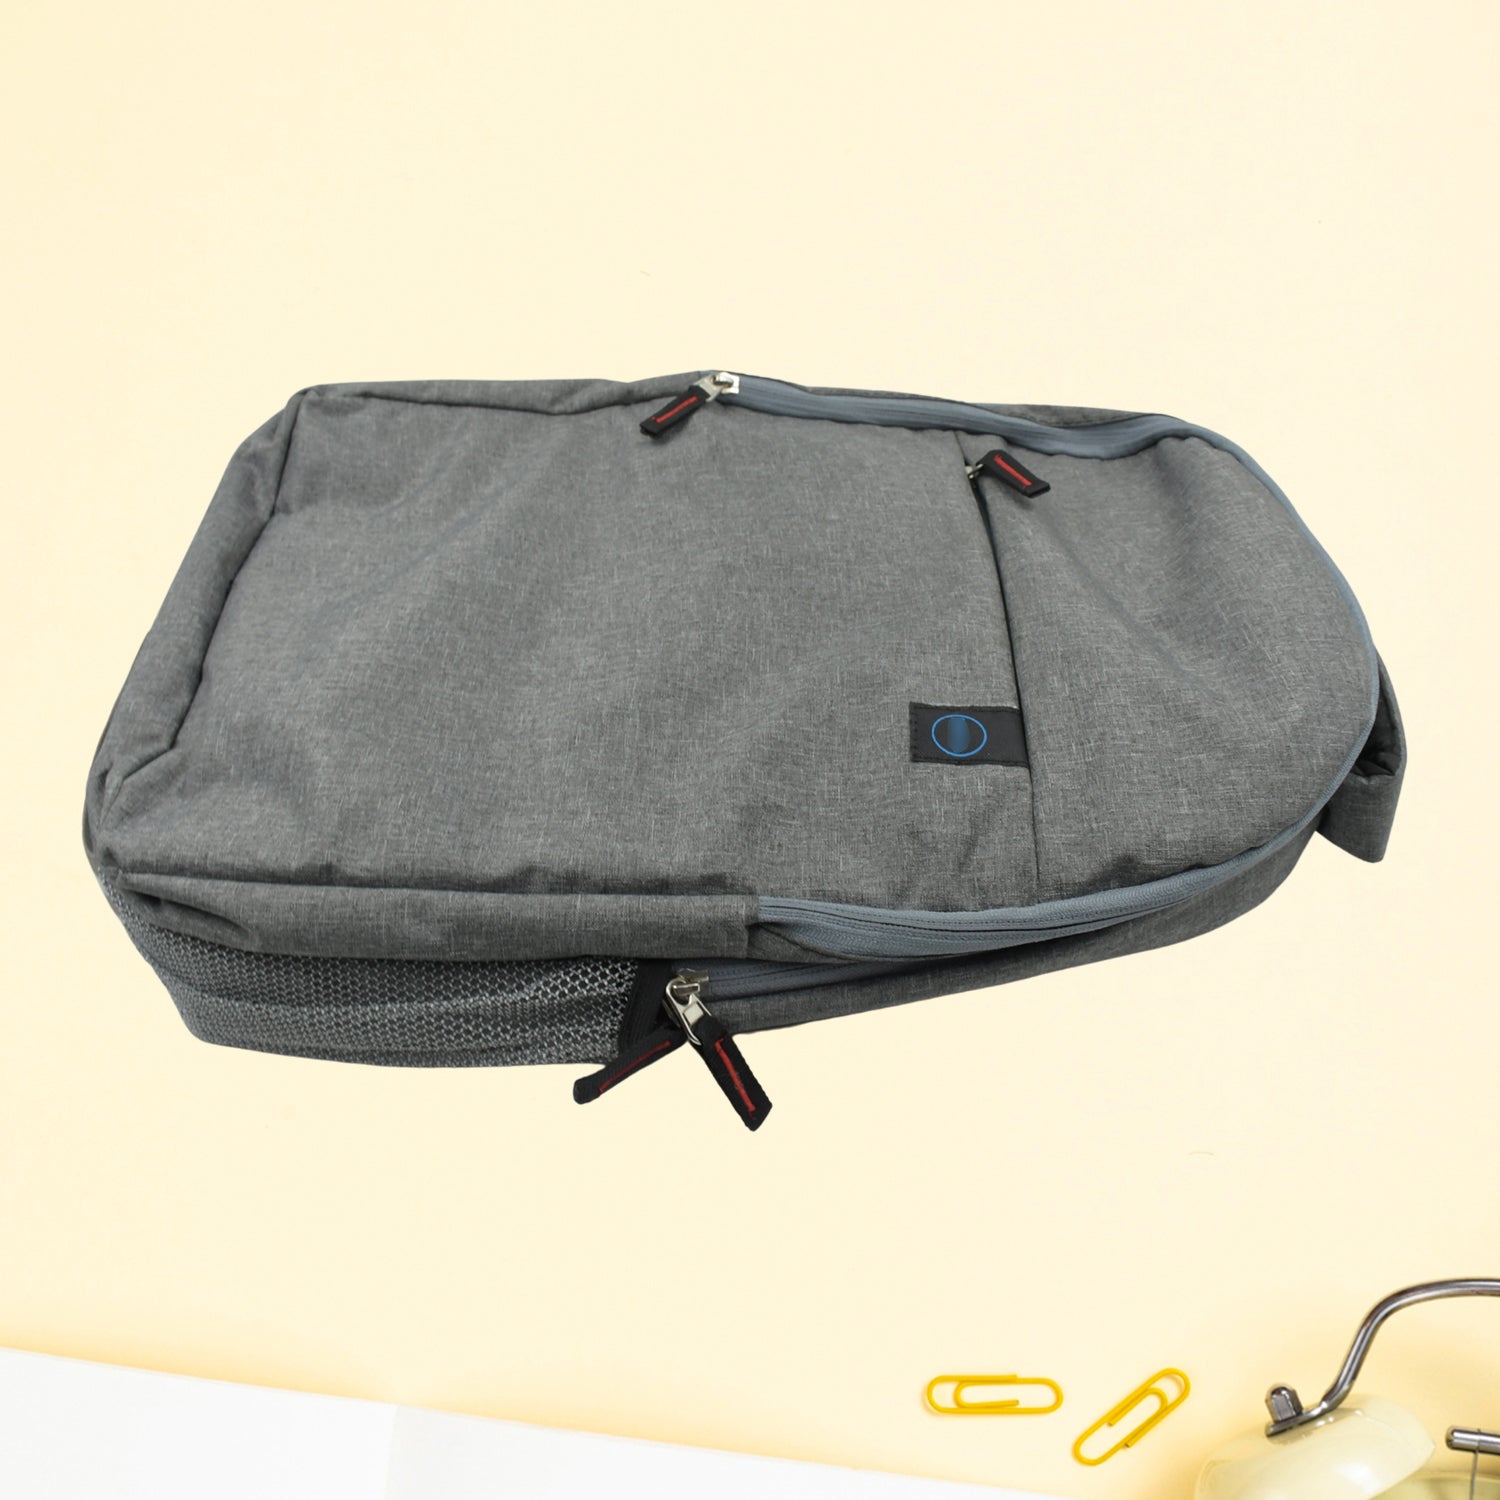 Versatile Laptop Bag: Lightweight & Water-Resistant